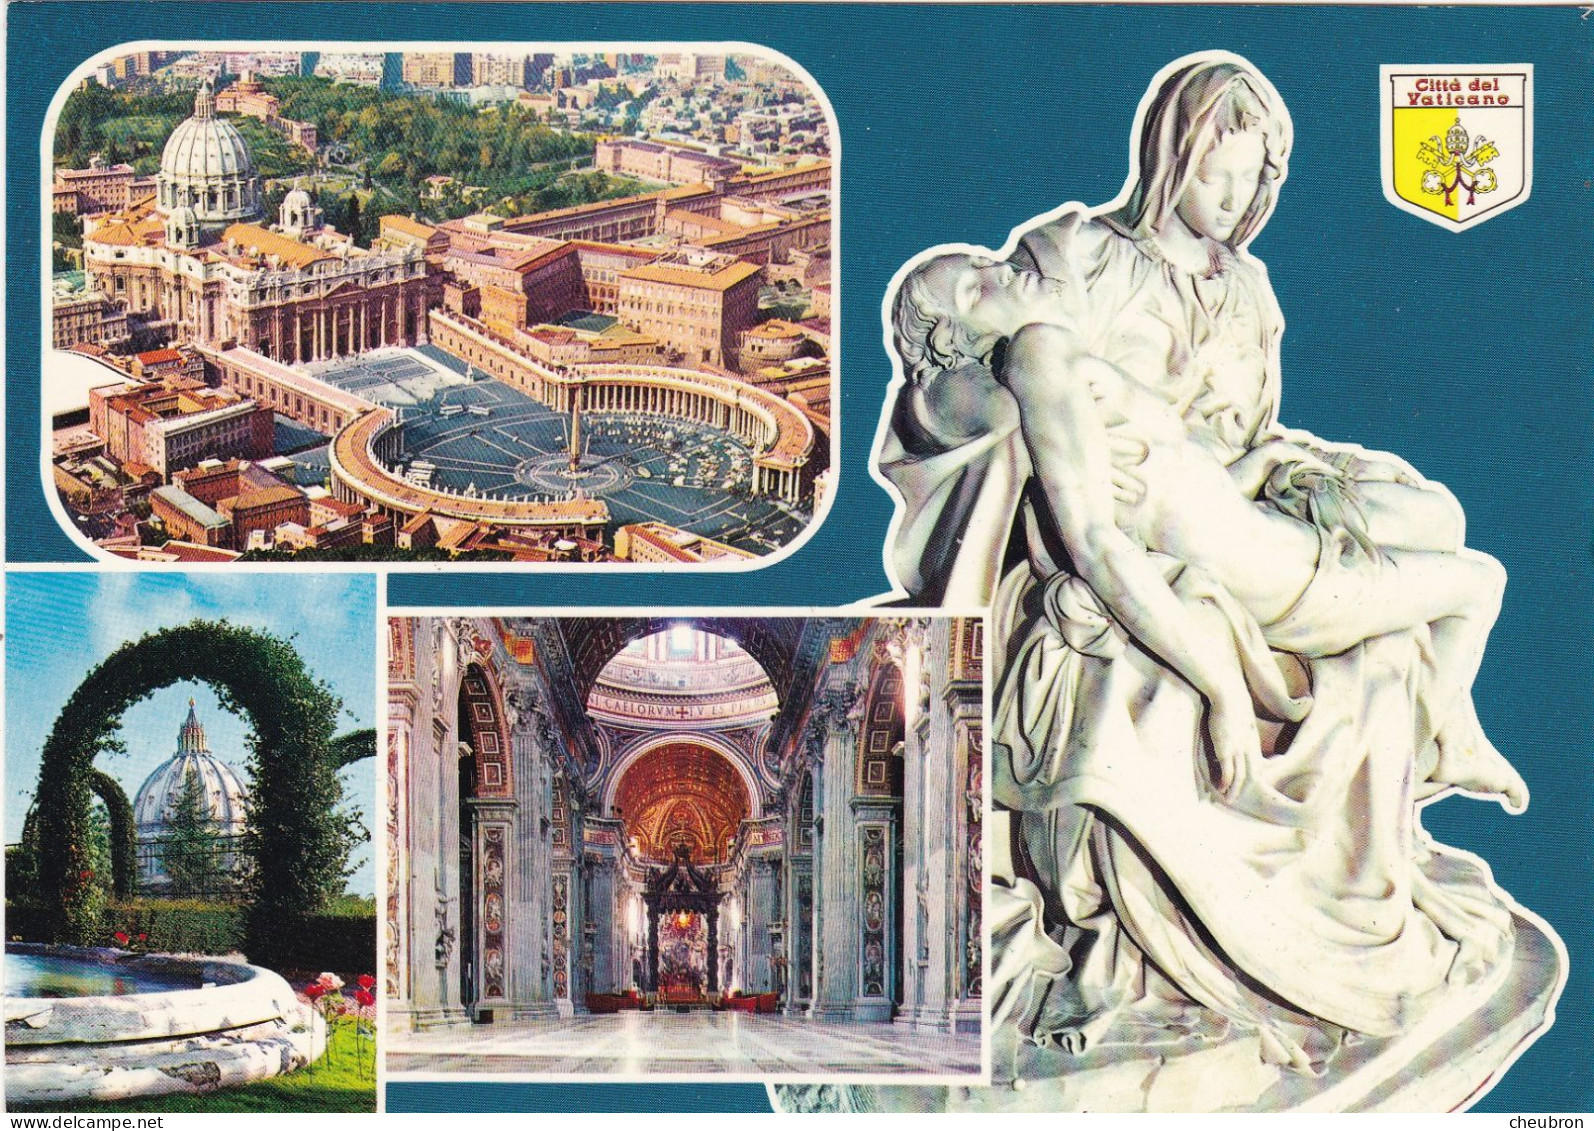 VATICAN. ROME(ENVOYE DE). MULTIVUES. CITE DEL VATICANO. .ANNÉE 1987 + TEXTE + TIMBRE - Vatikanstadt